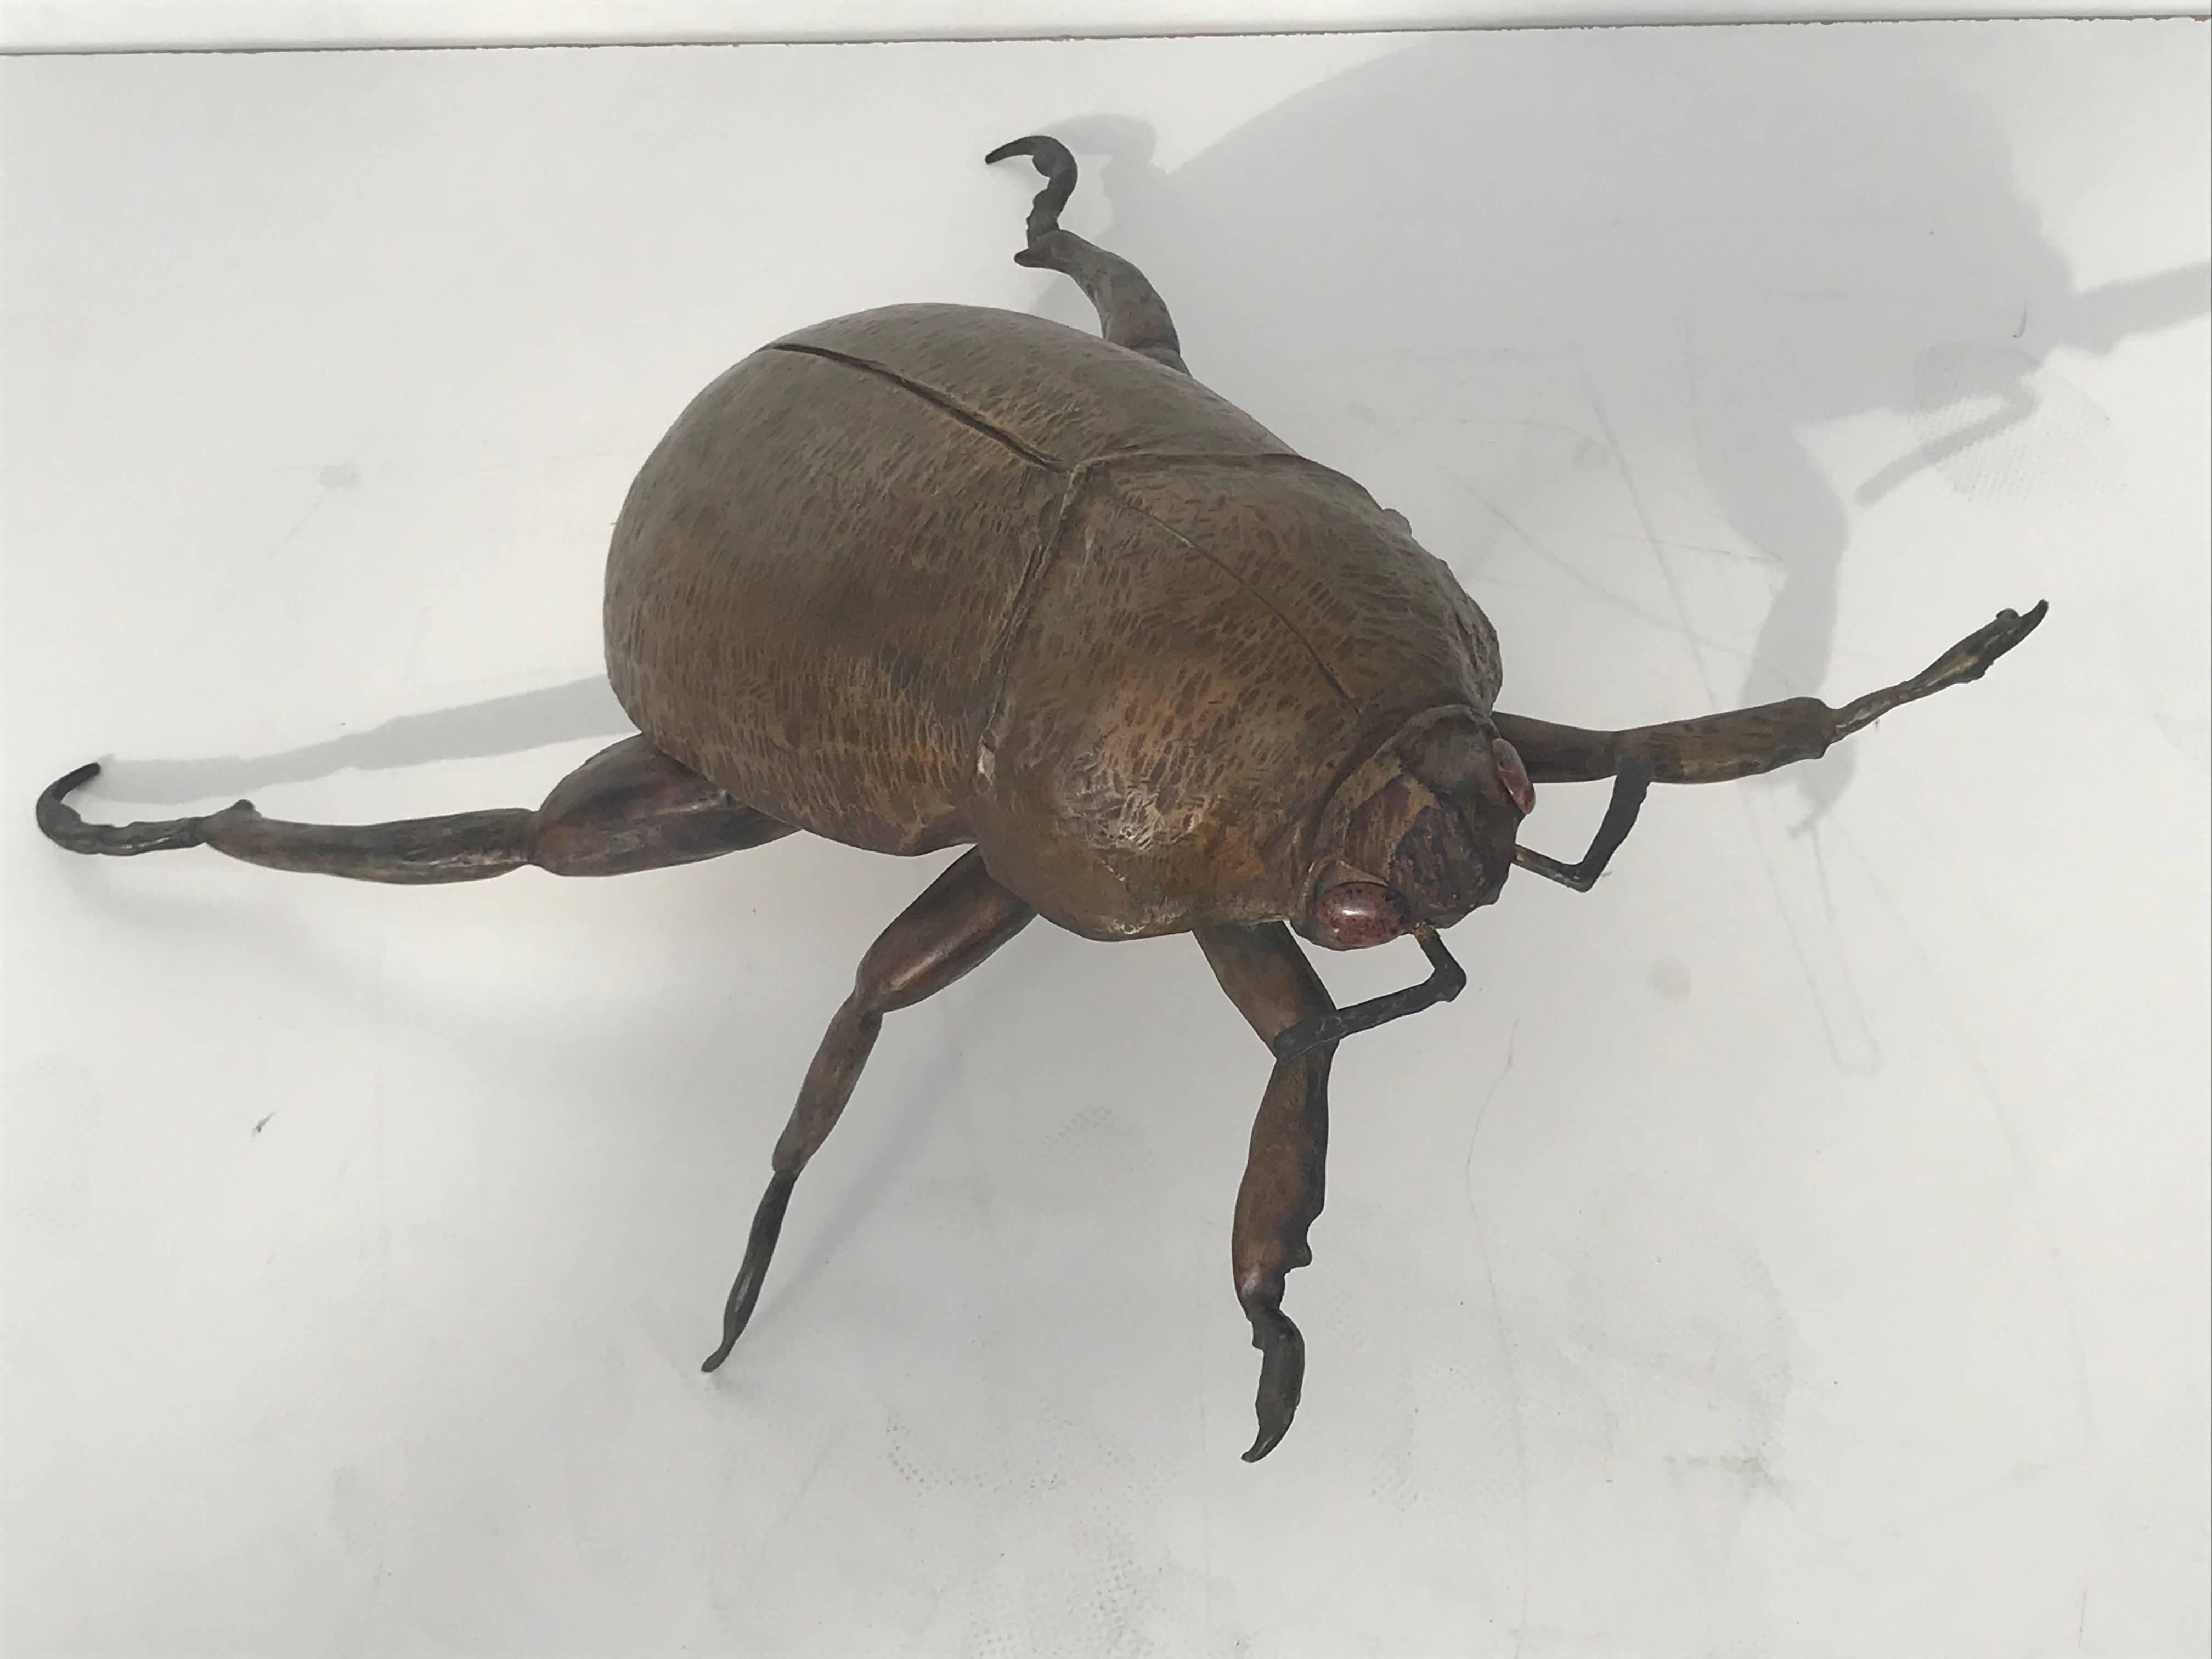 Giant garding beetle sculpture in bronze.